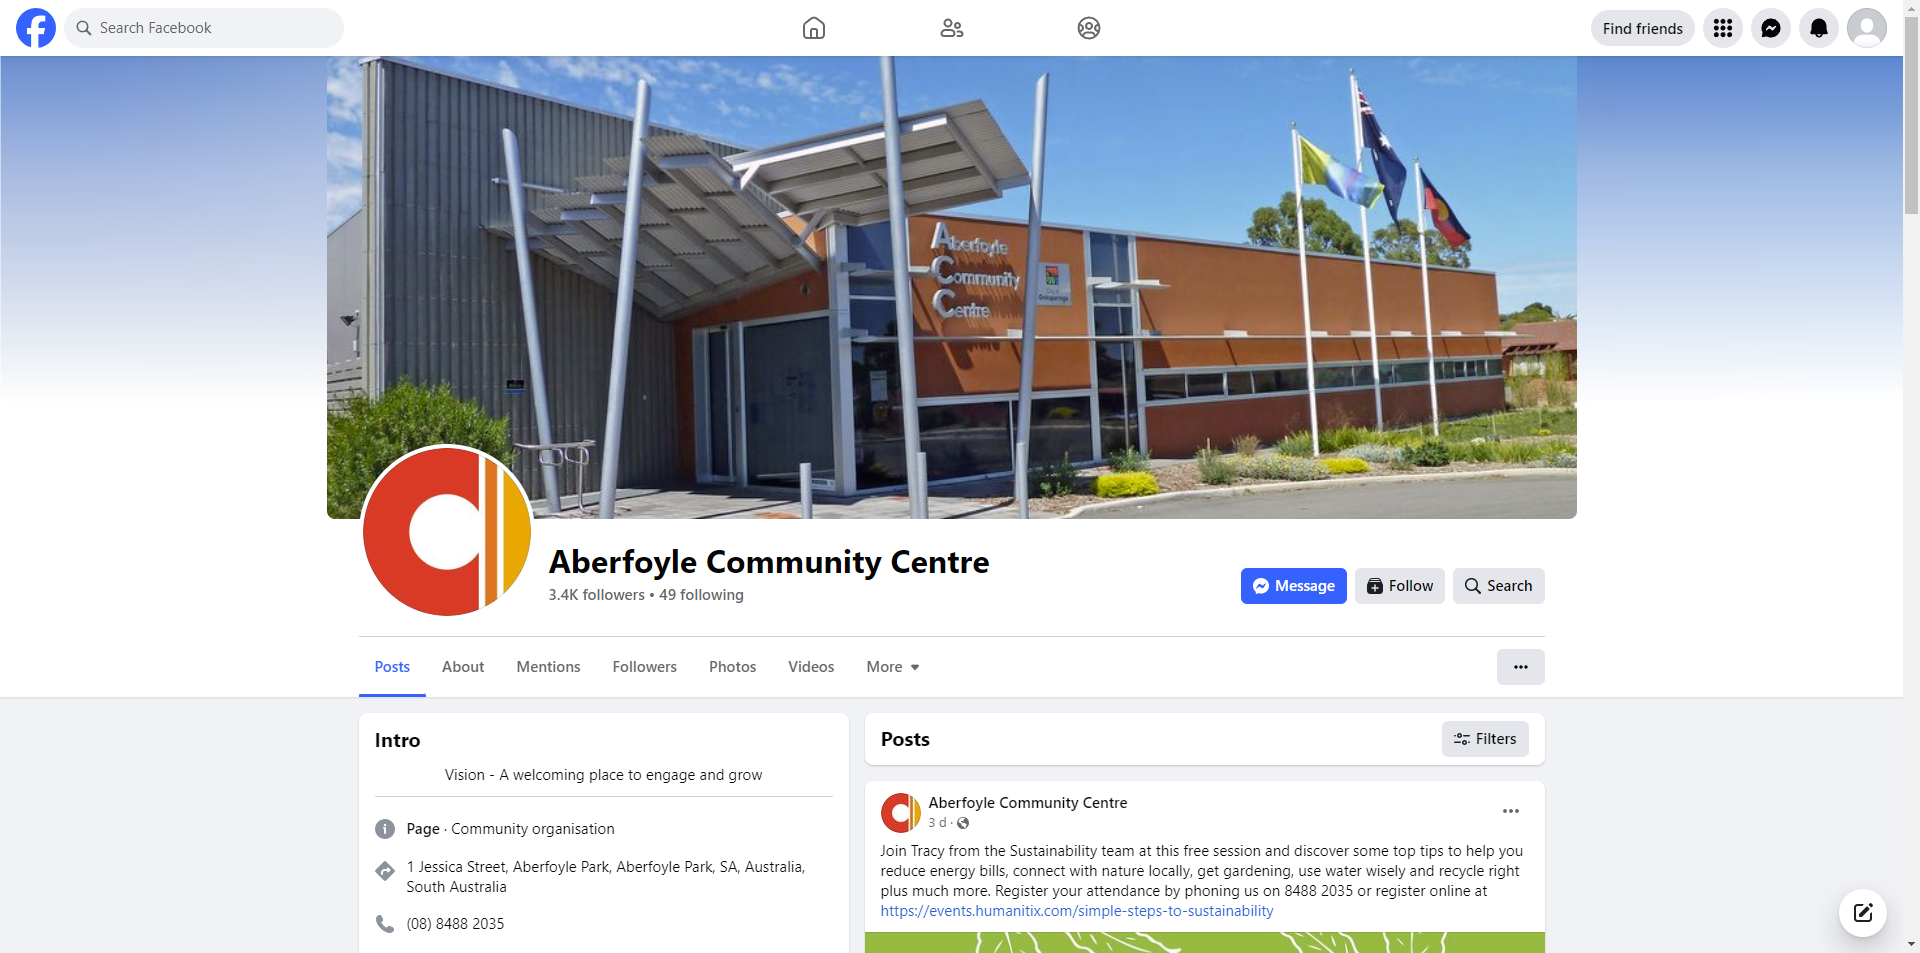 Aberfoyle Community Centre